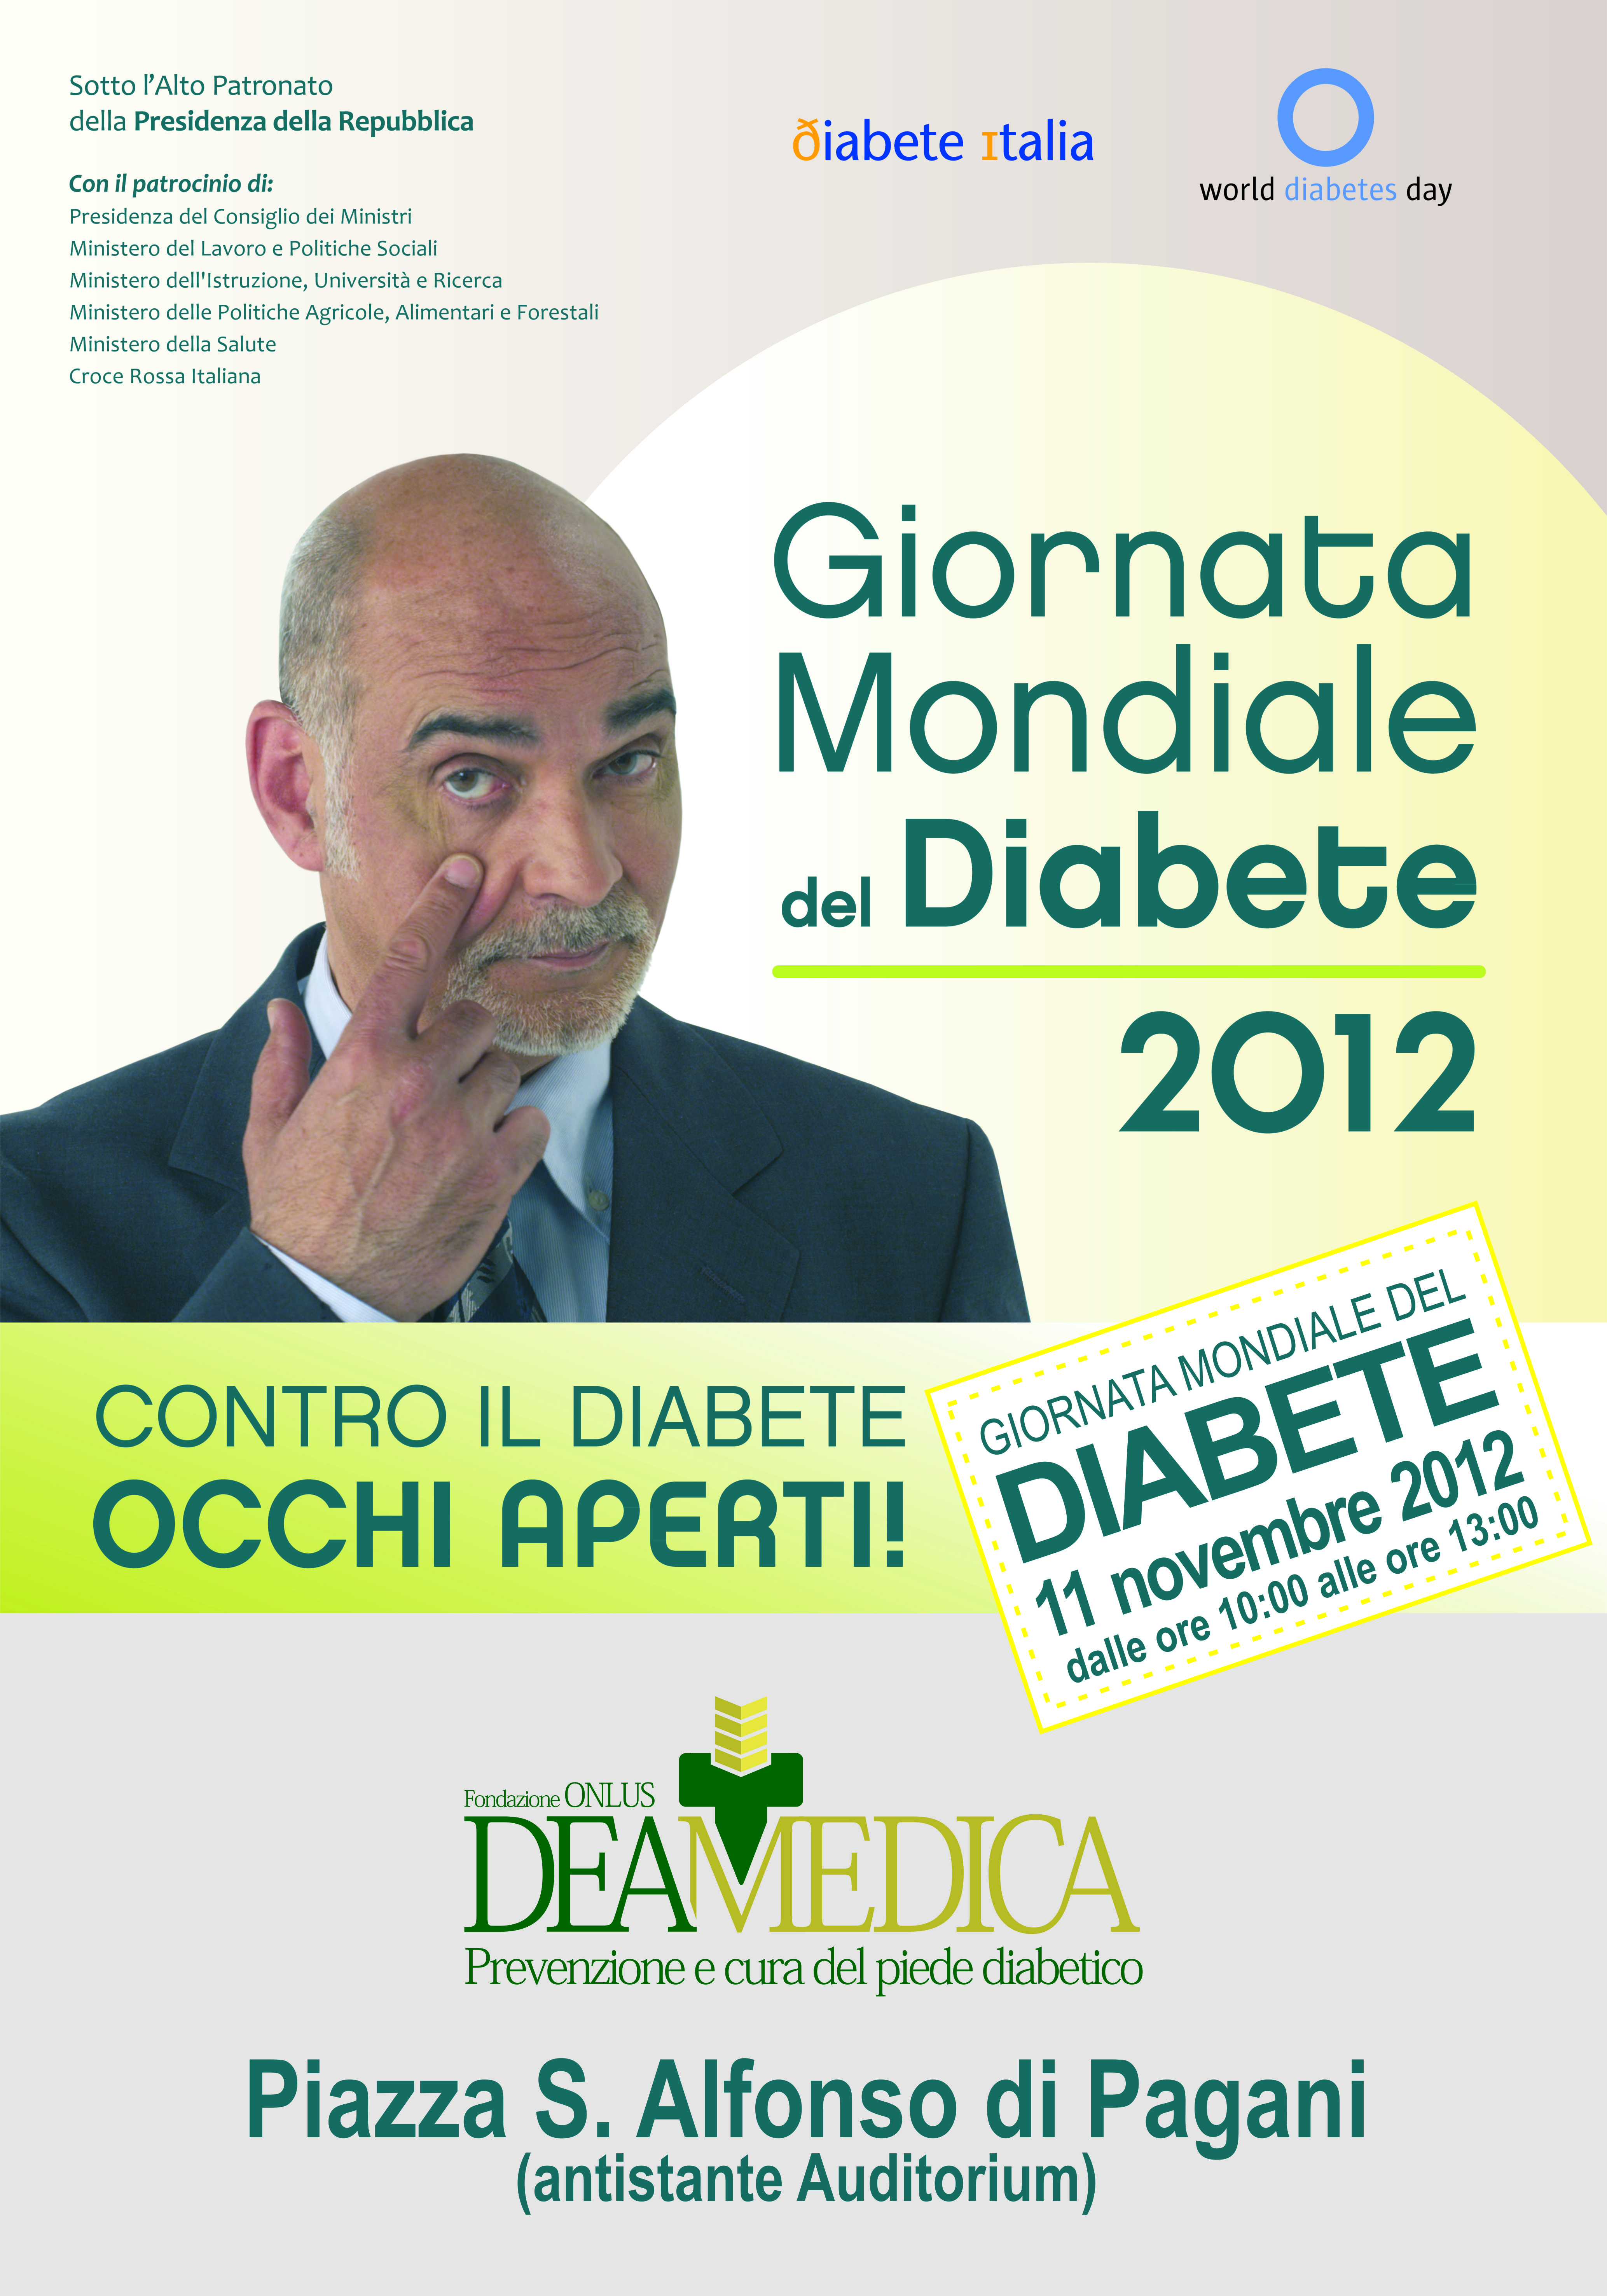 Fondazione Deamedica-Giornata Mondiale del Diabete 2012